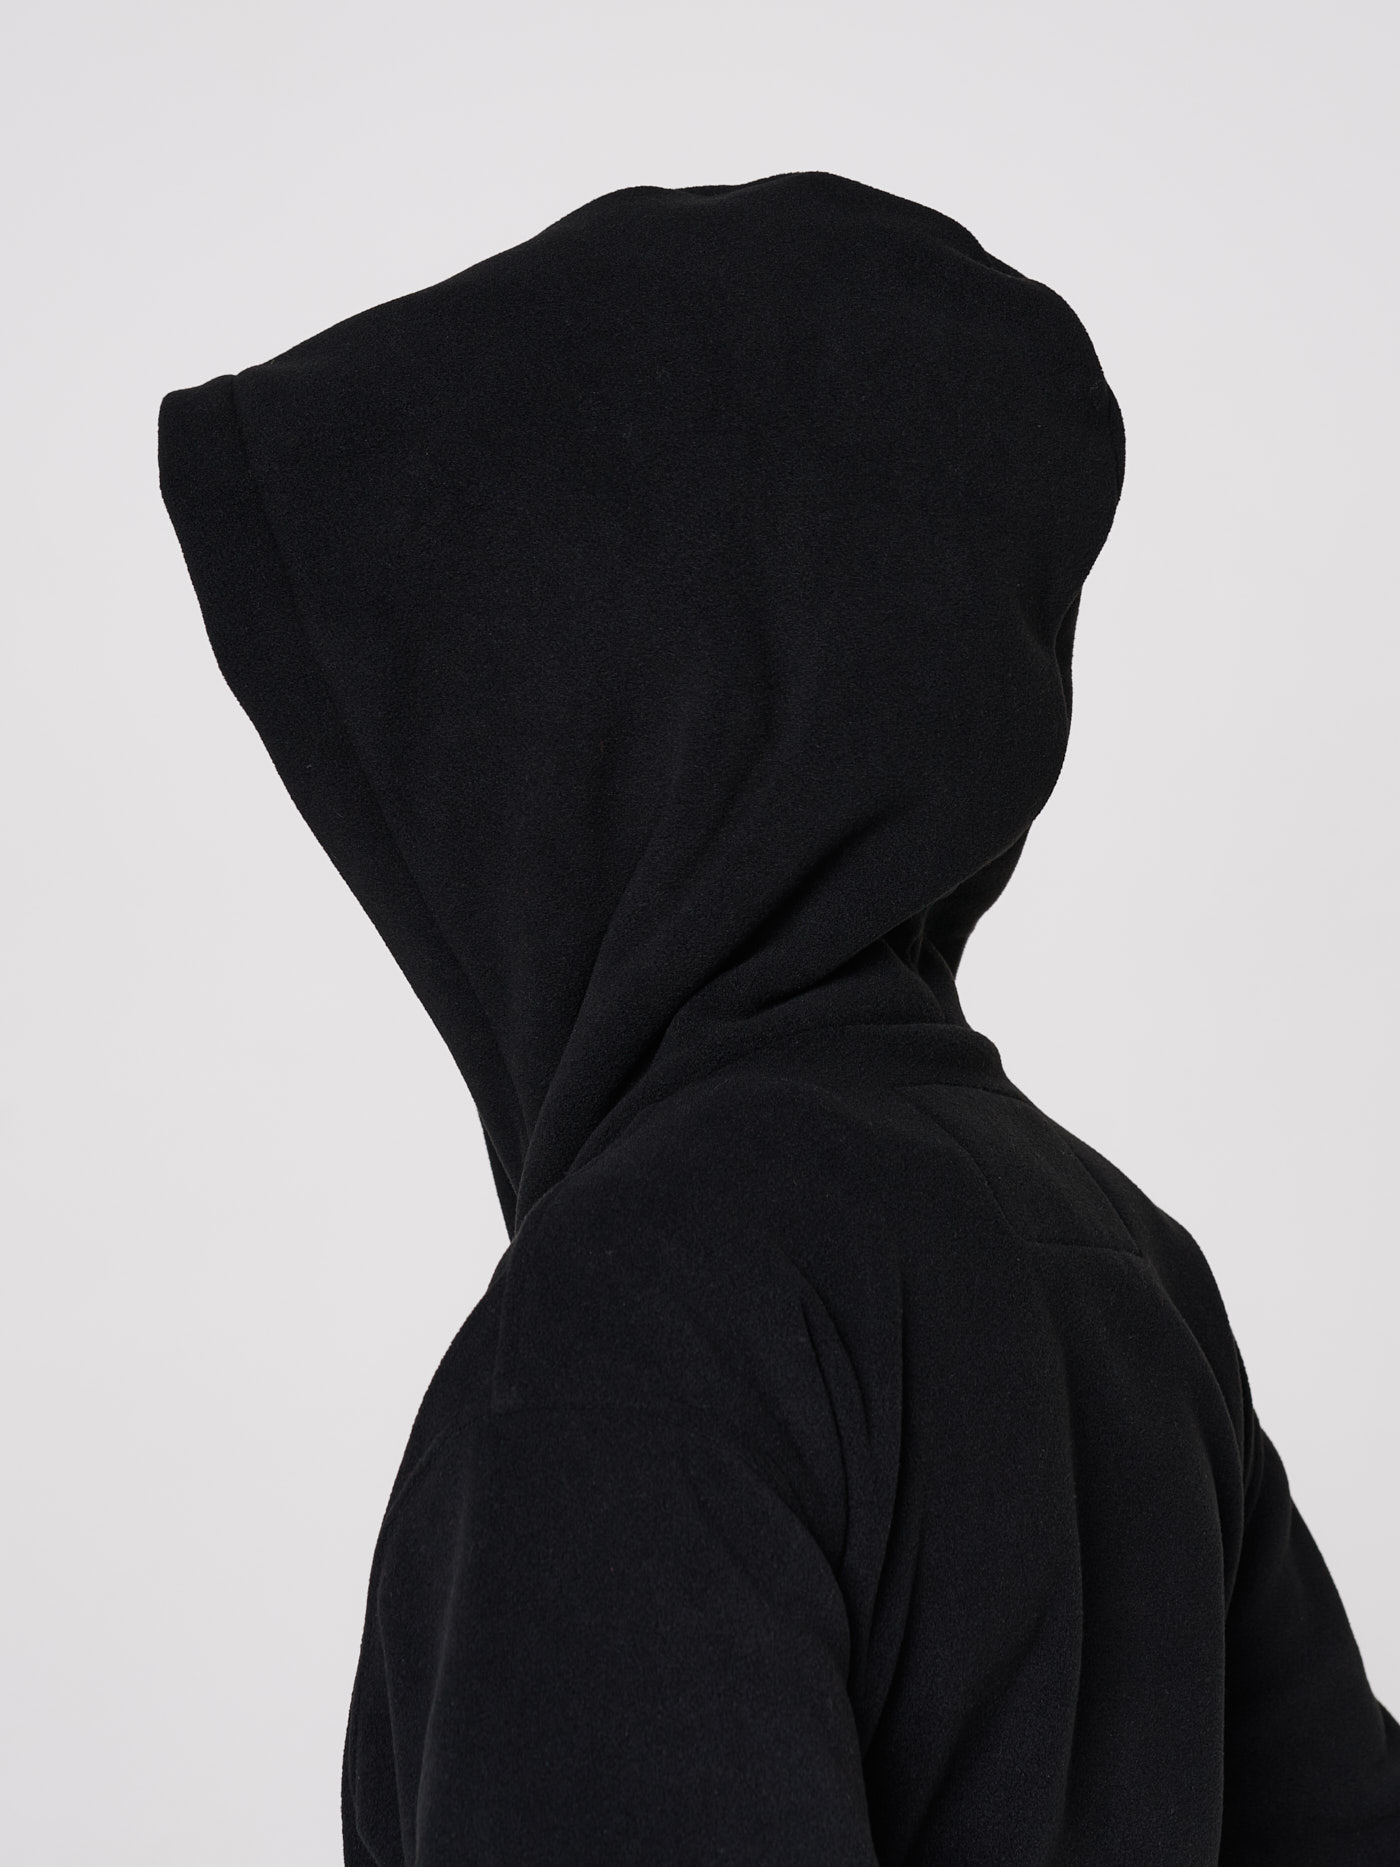 Куртка BASK juno, размер 140, цвет черный 20104-9009-140 Torin - фото 3